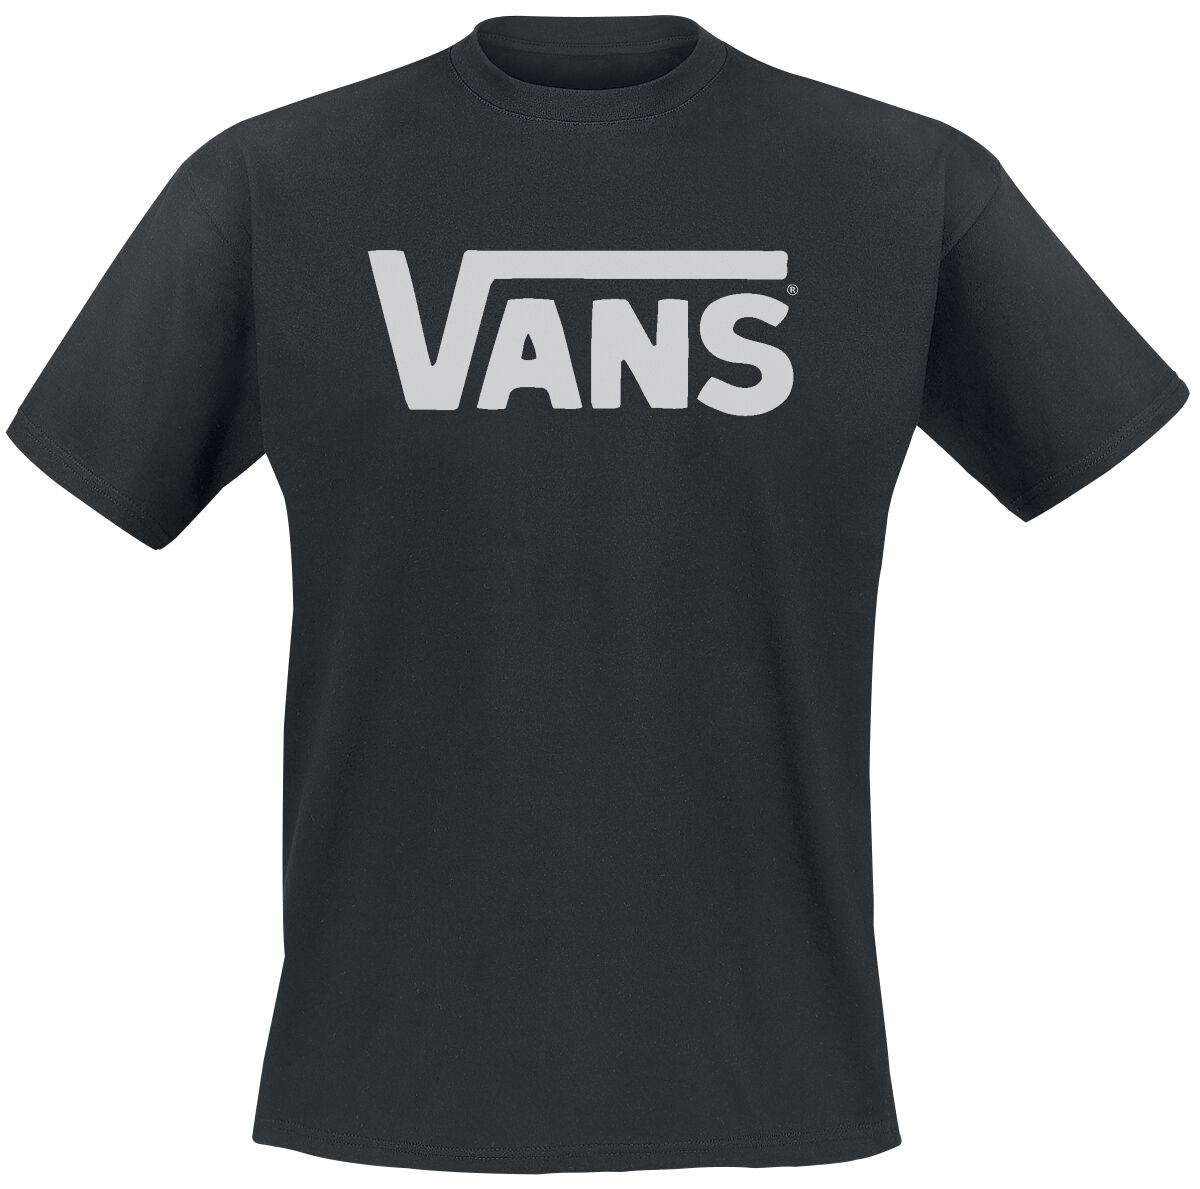 Vans T-Shirt - Classic - S bis L - für Männer - Größe S - schwarz/weiß